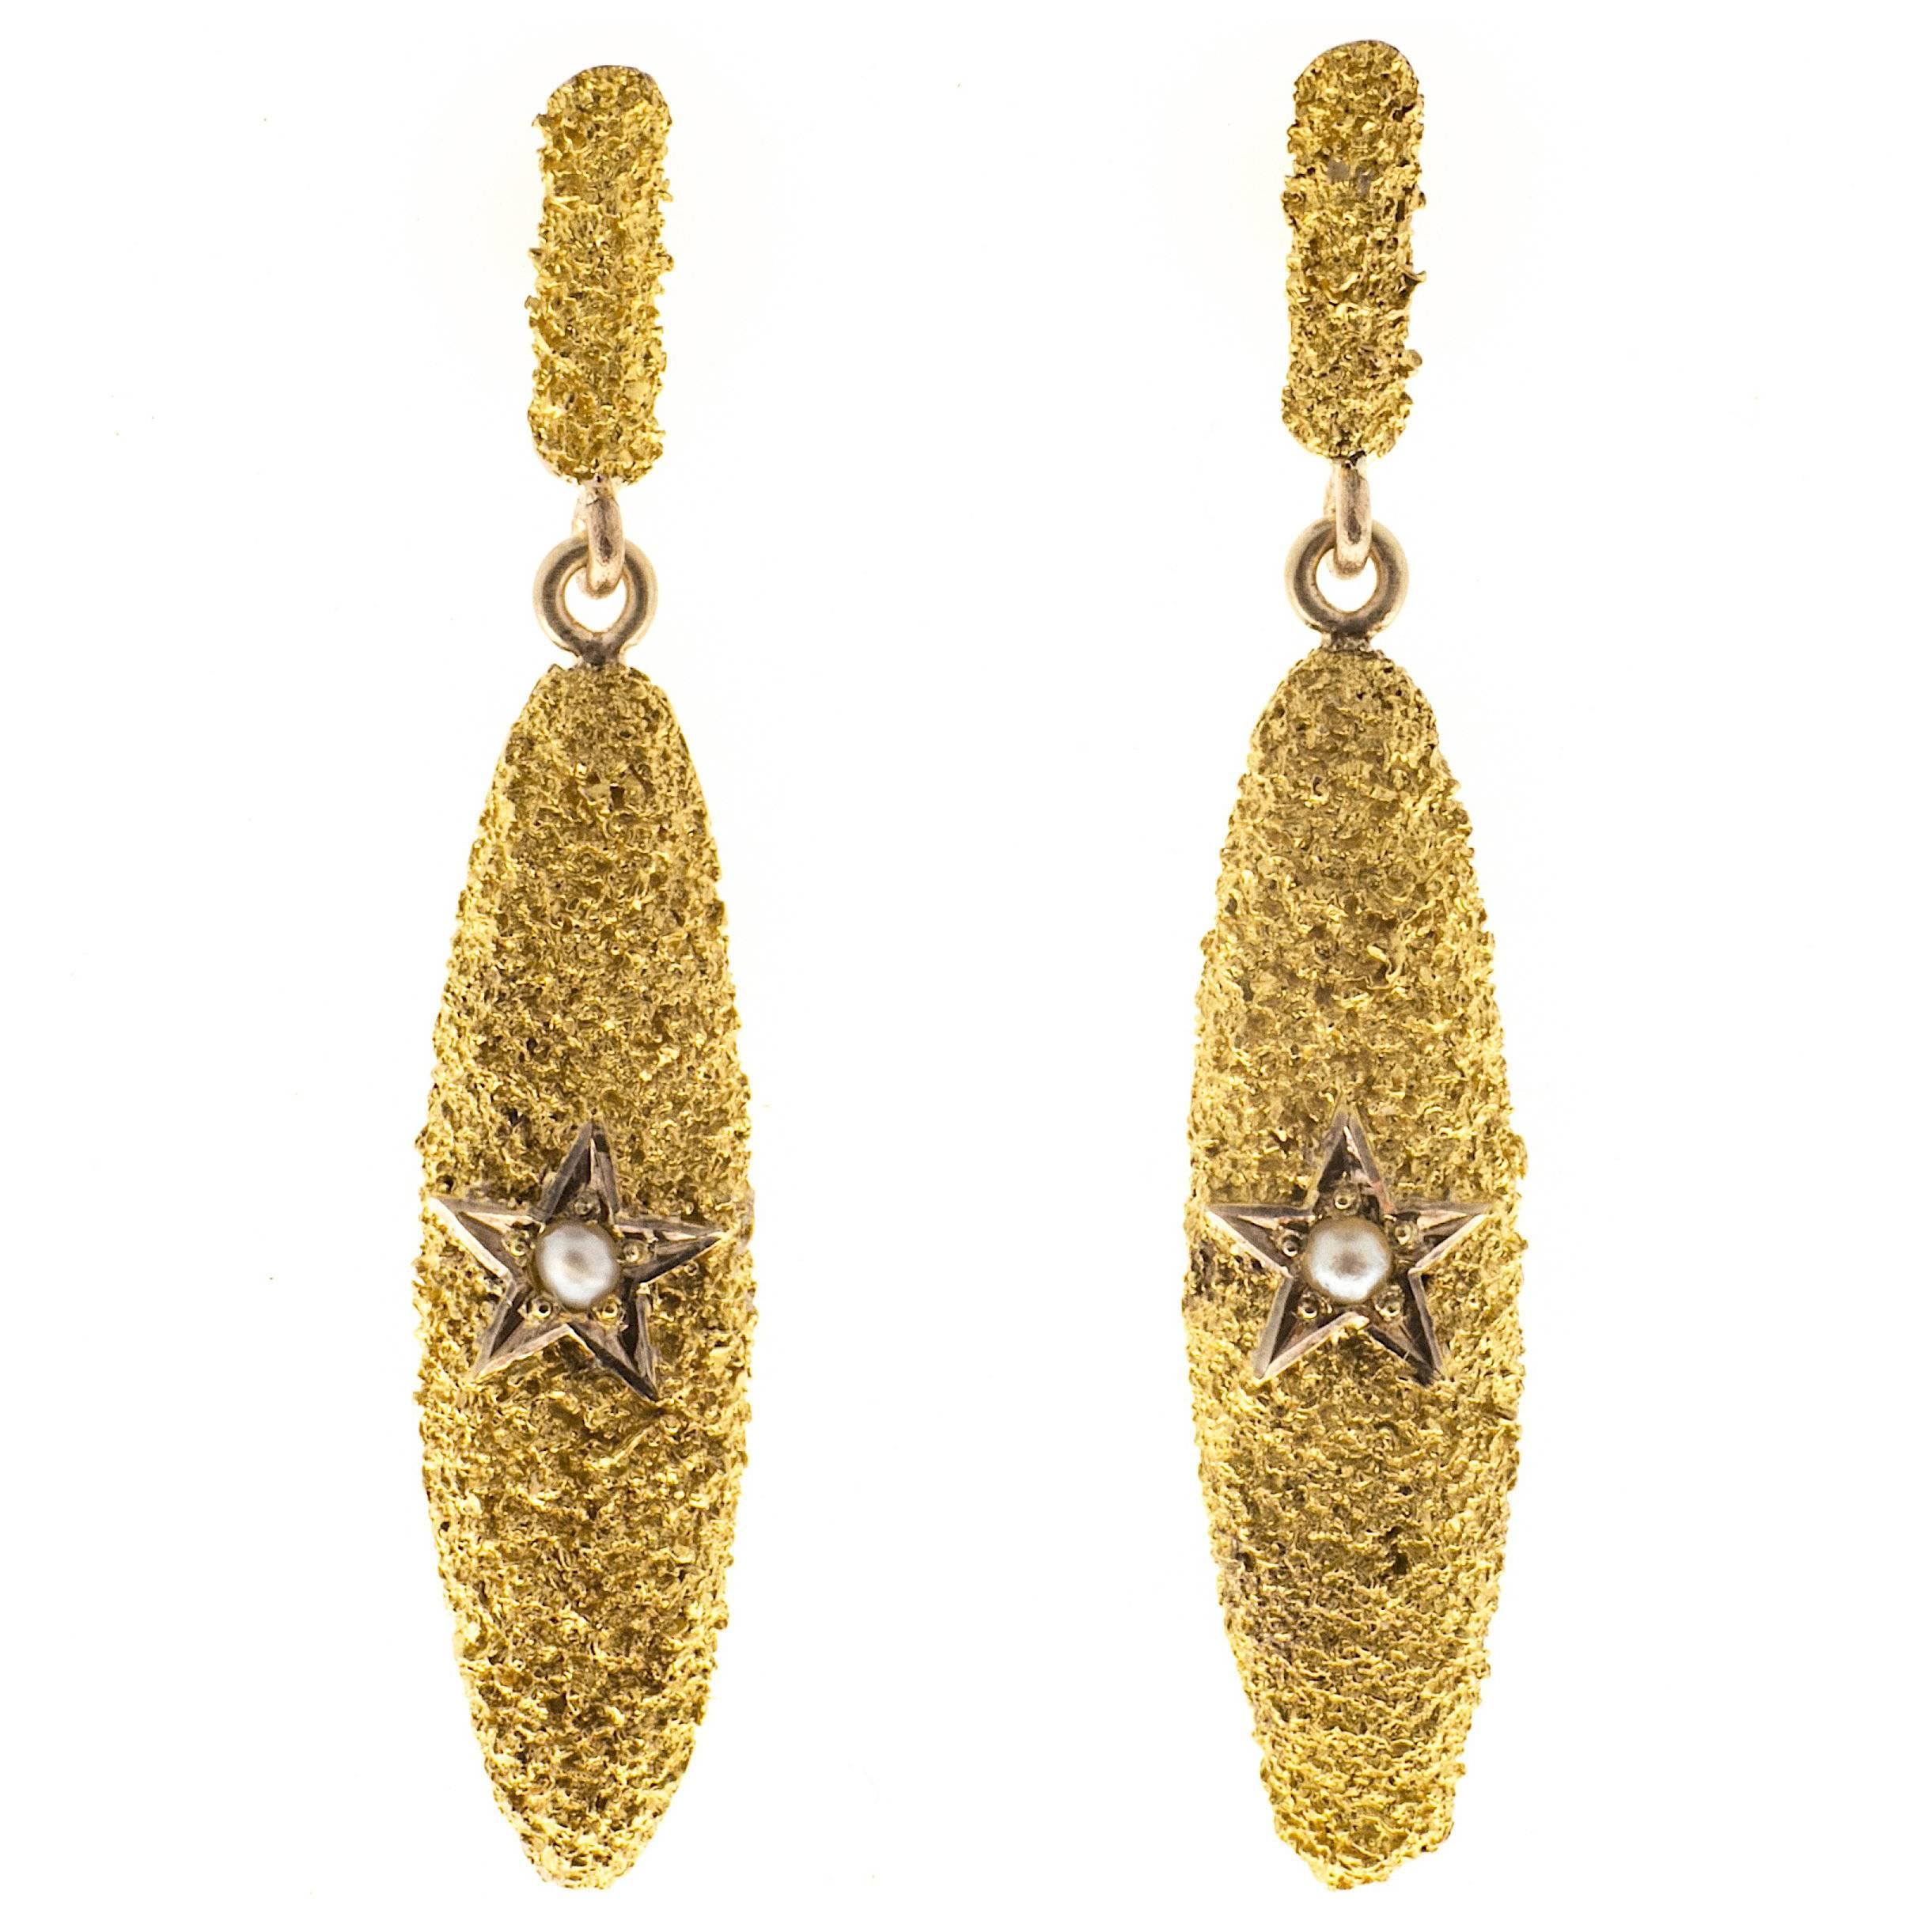 Viktorianische viktorianische Perlen-Ohrringe mit strukturiertem Stern aus Gold 